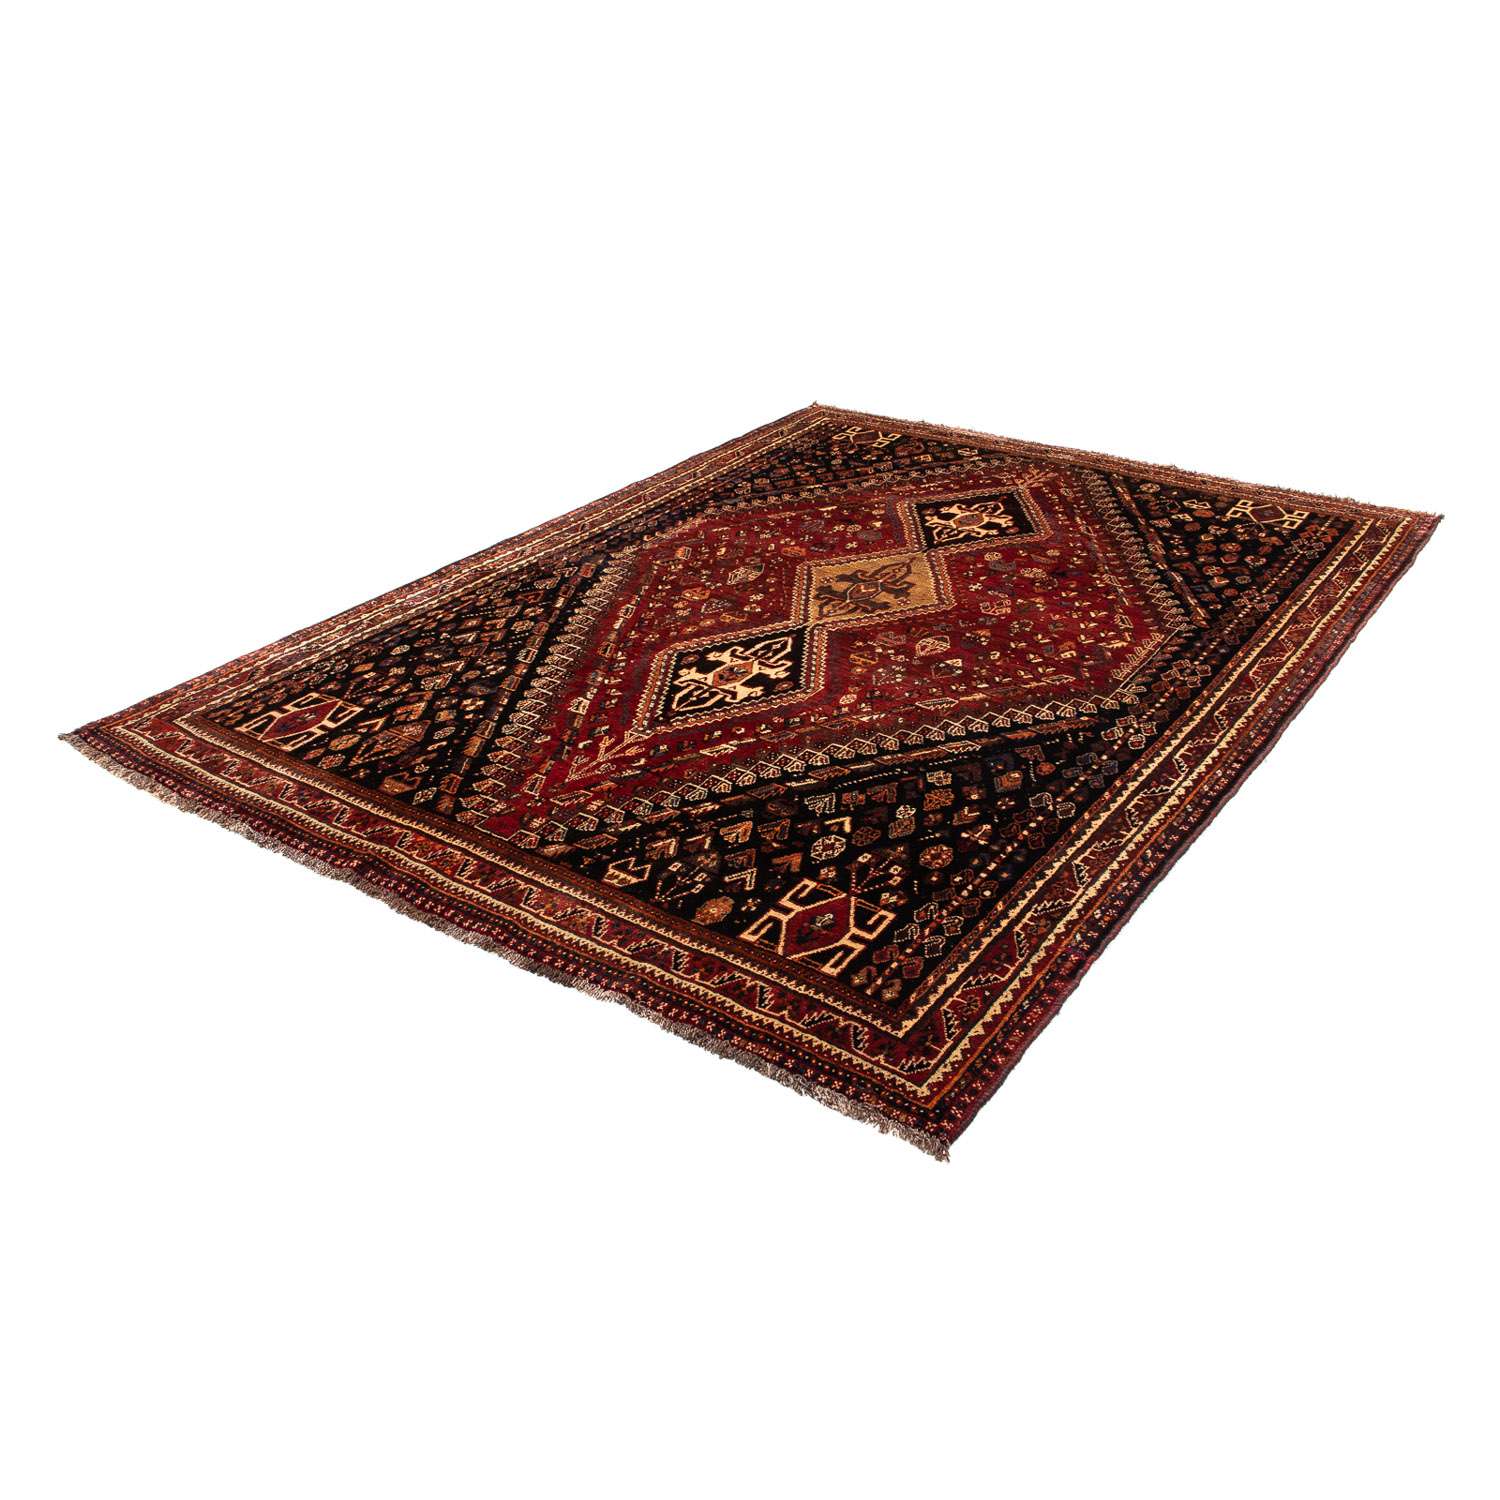 Persisk teppe - Nomadisk - 266 x 187 cm - mørk rød